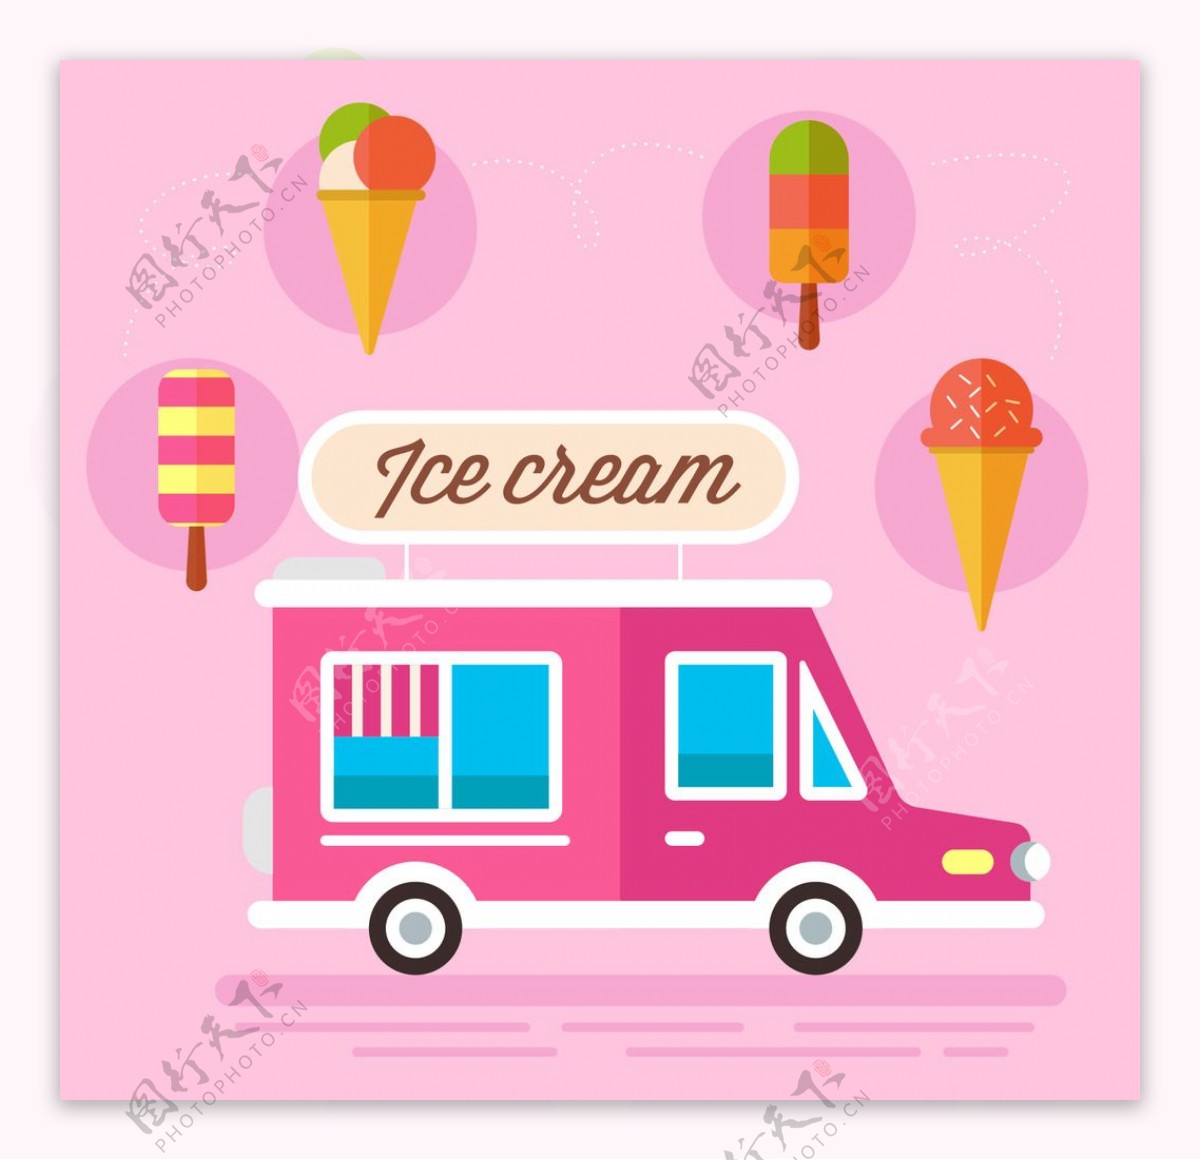 冰淇淋雪糕车